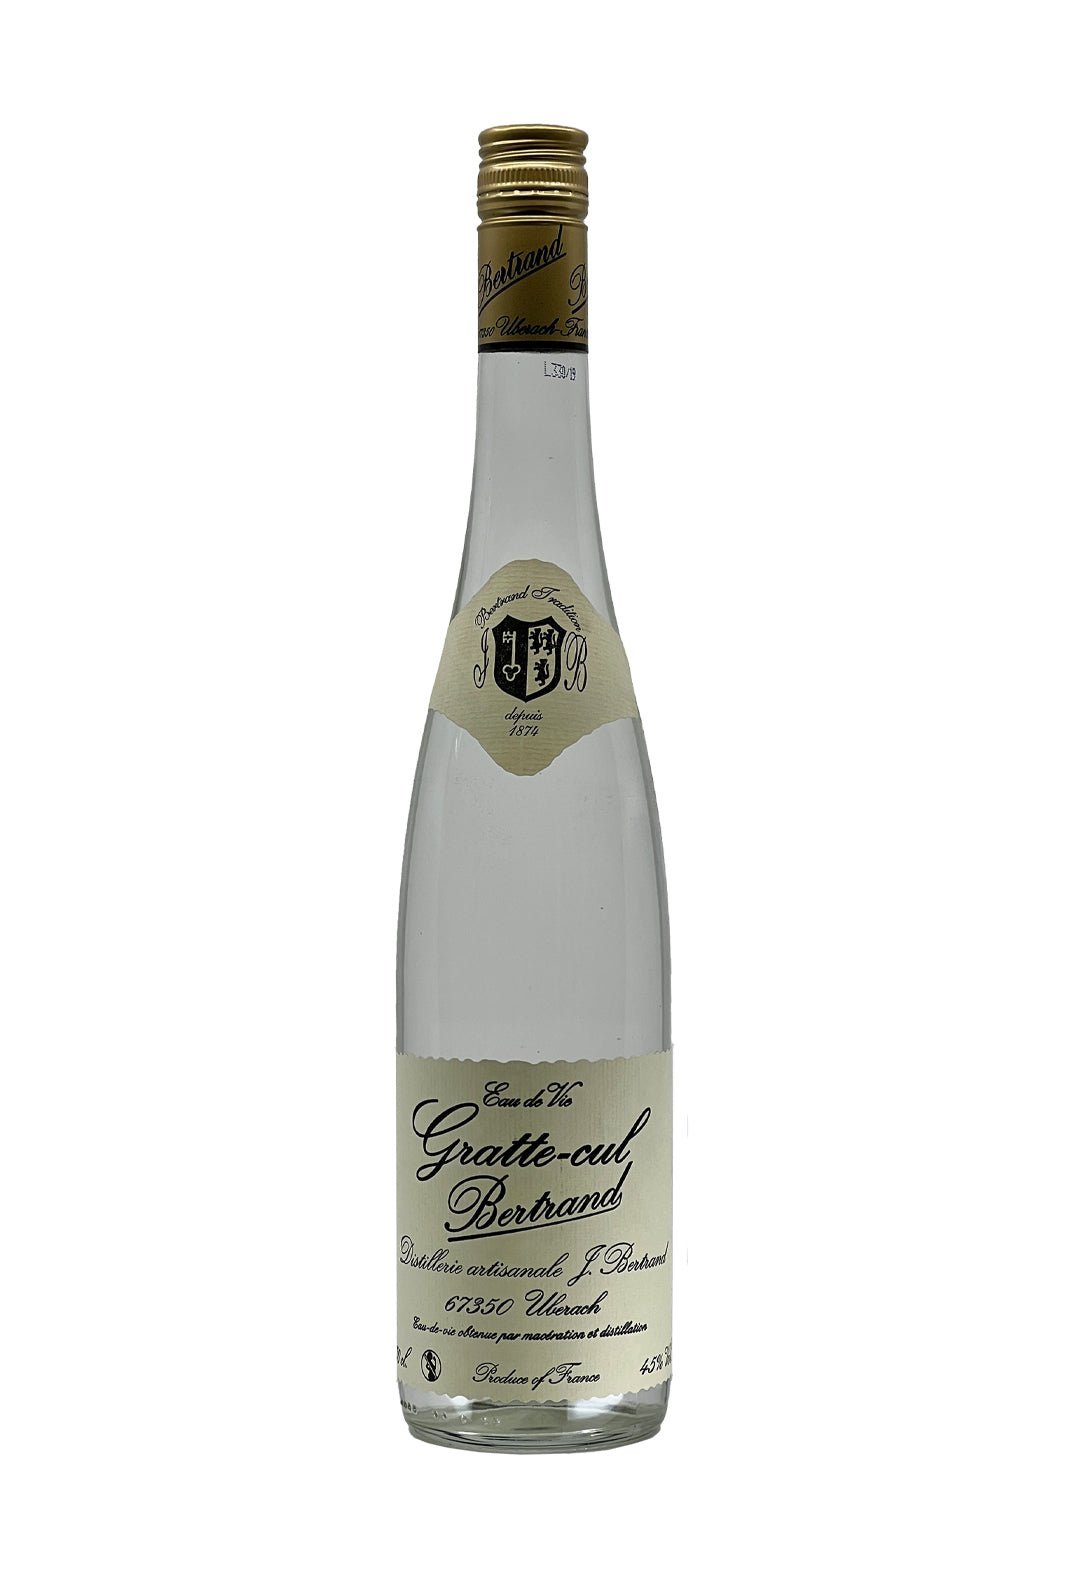 Bertrand Eau de Vie Rosehip (Gratte cul) 45% 700ml | liqueur | Shop online at Spirits of France